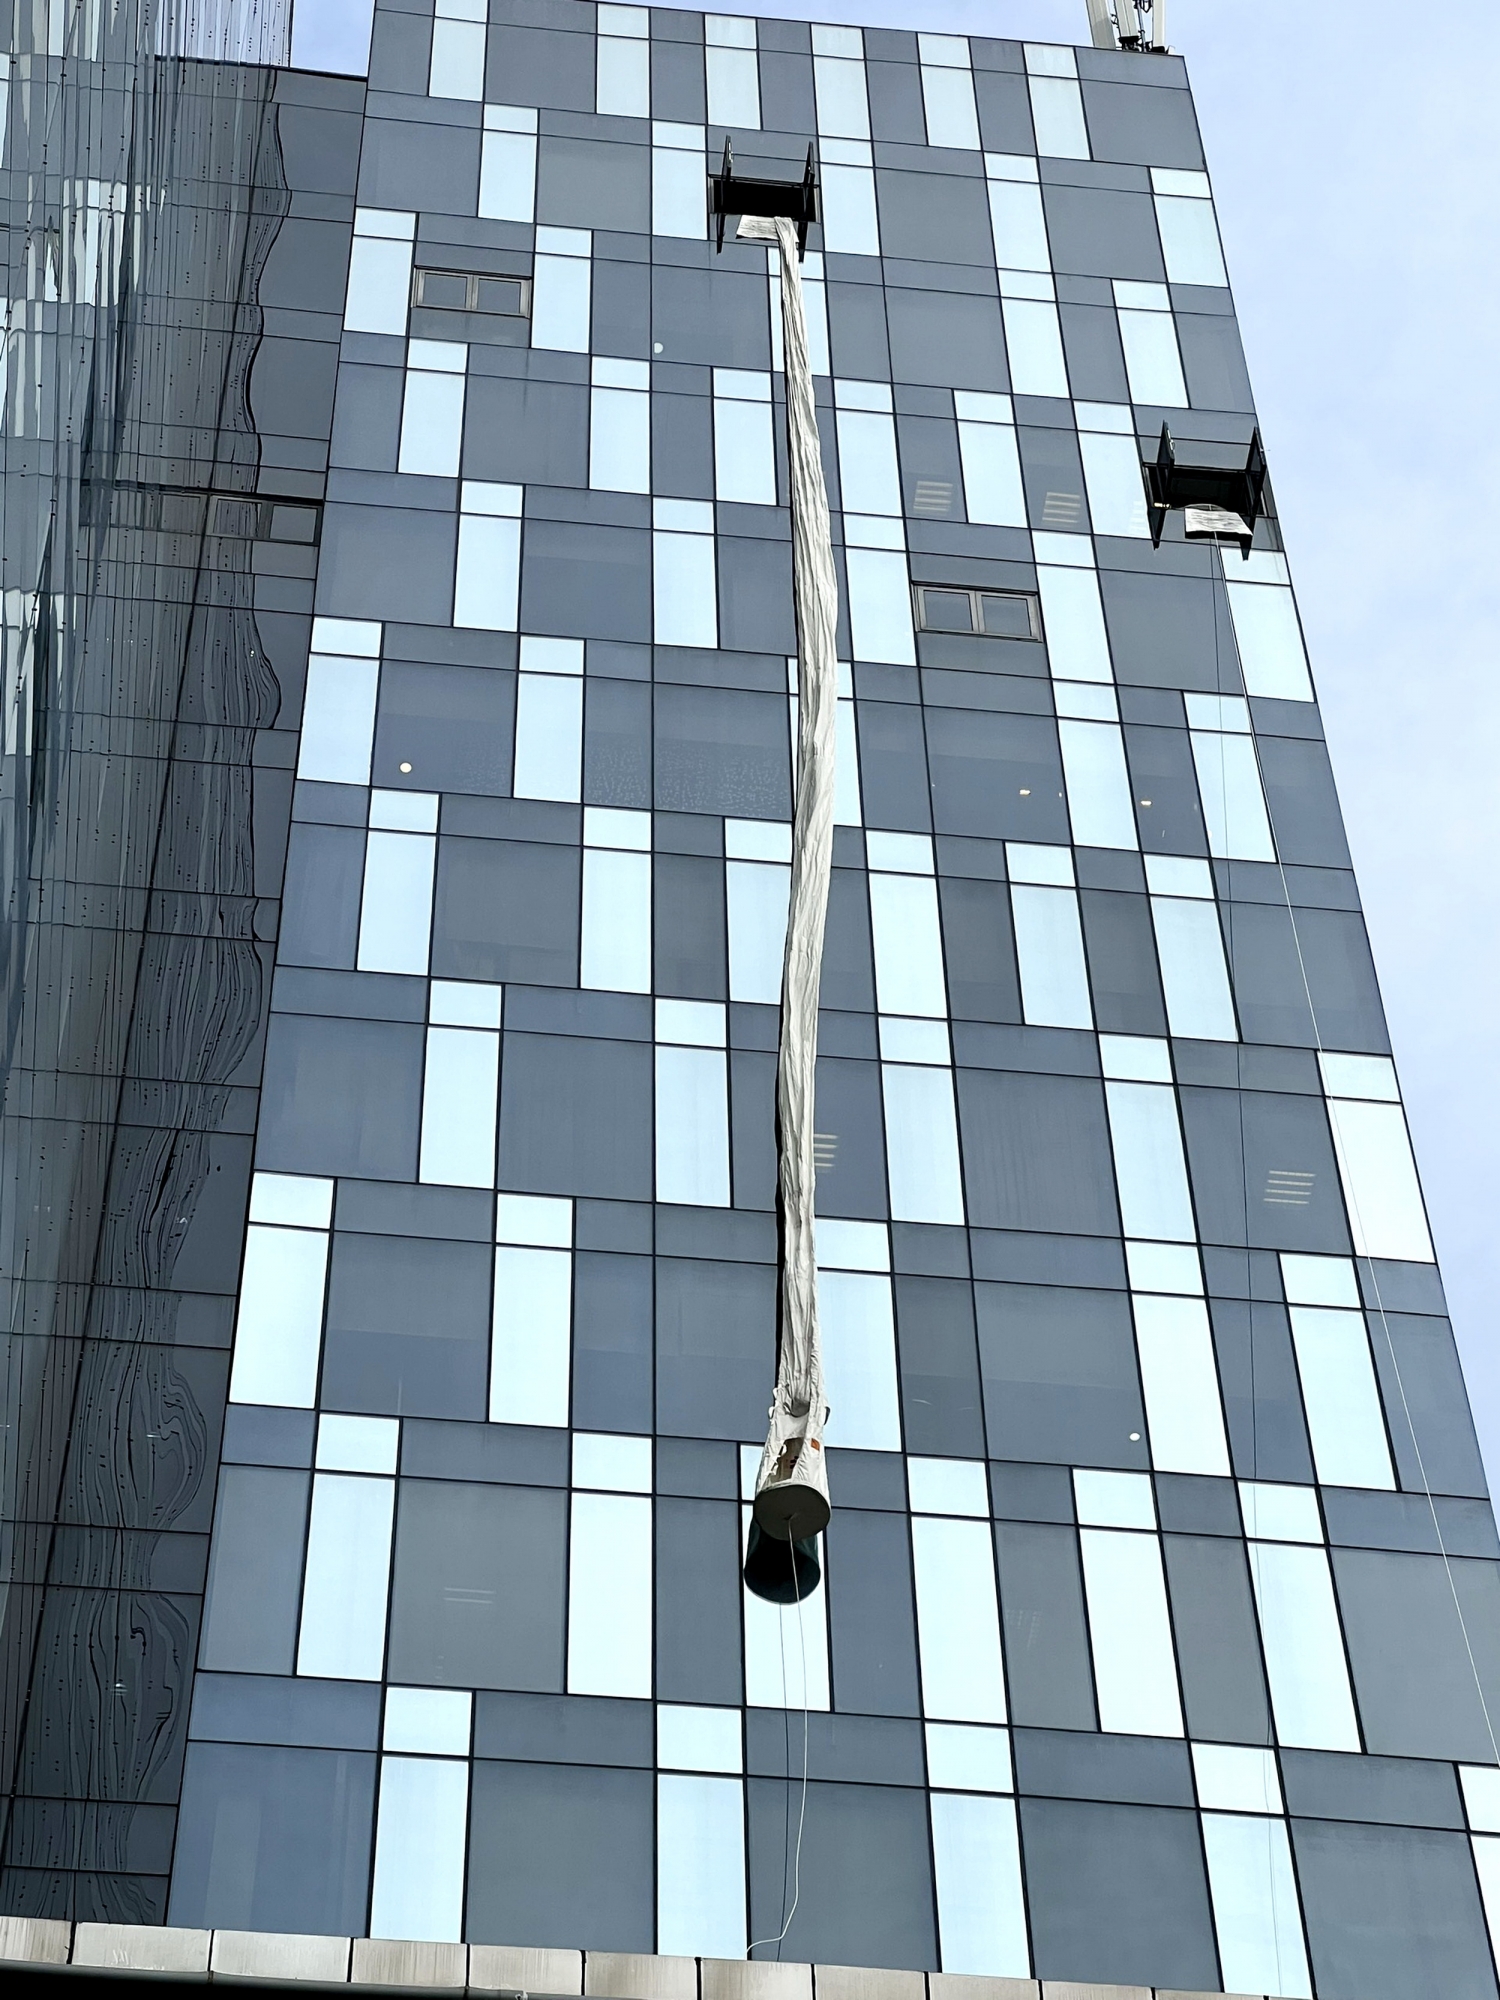 Triển khai ống trượt thoát hiểm từ tầng cao của PV GAS Tower